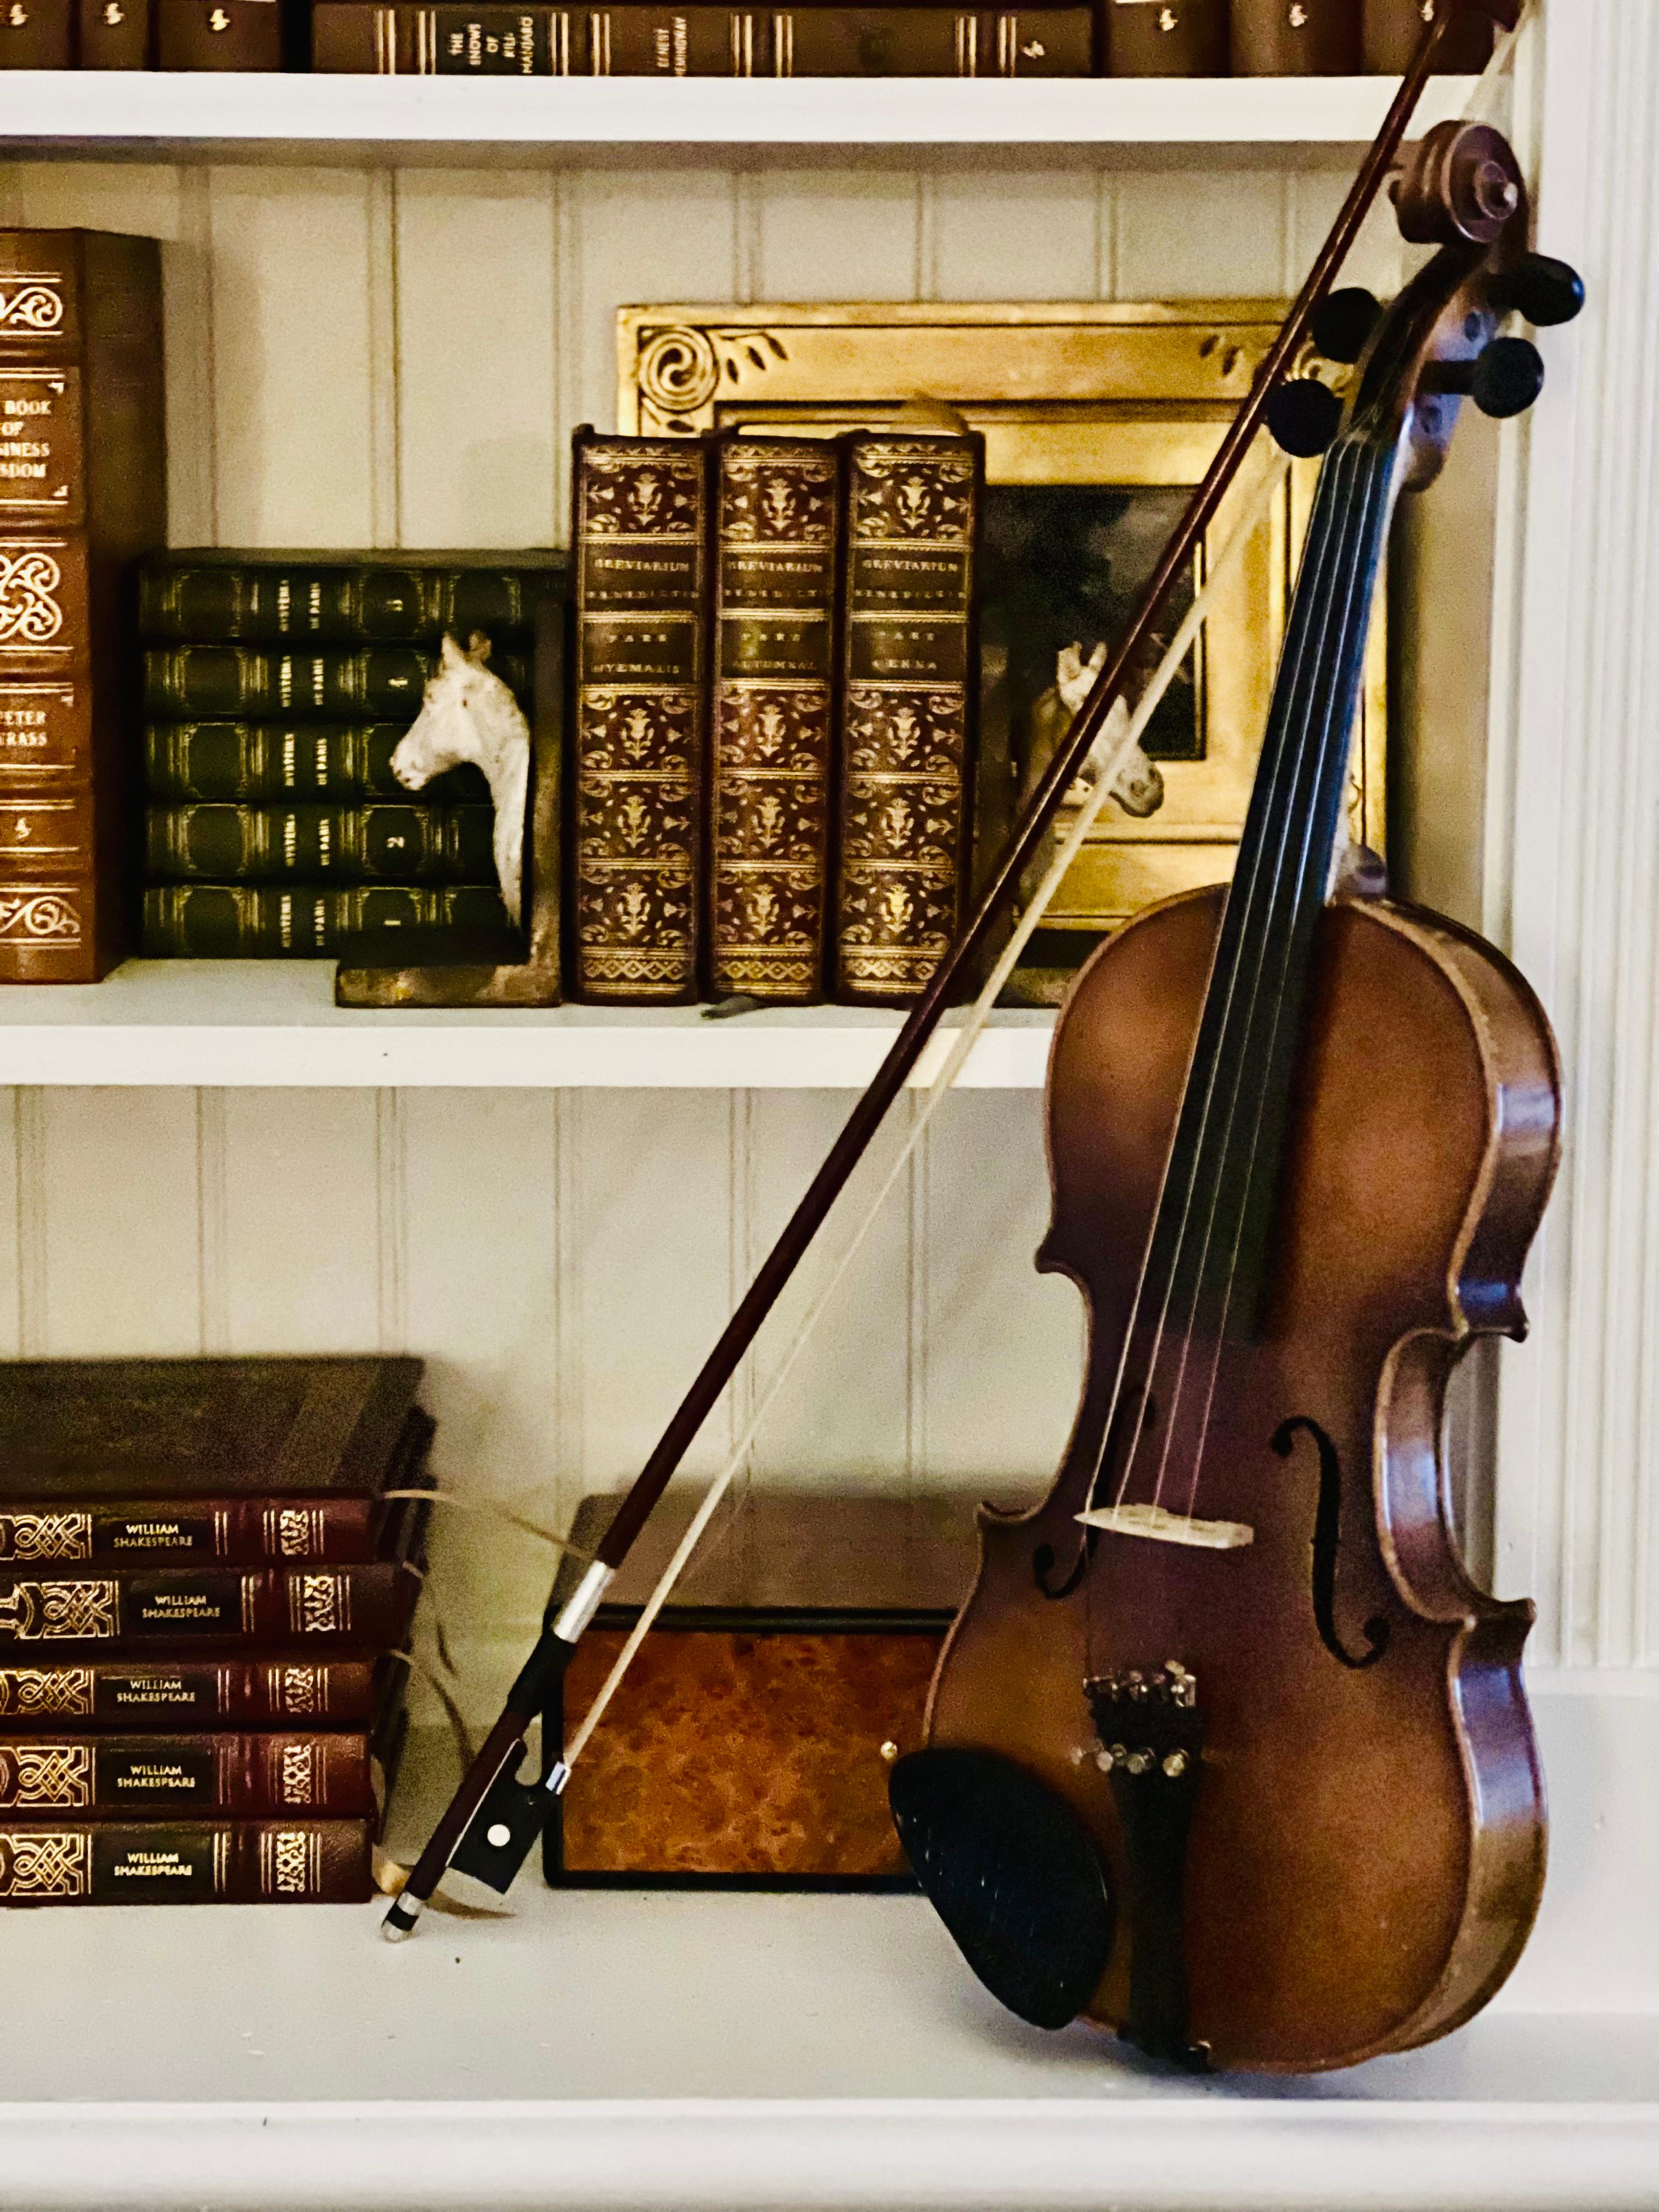 E.R. Pfretzschner 3/4 handgefertigte Kopie der Antonius Stradivarius Geige, hergestellt in Deutschland, 1970. Elegante, reiche Holzmaserung und feine Handwerkskunst unterstreichen die Schönheit dieser Geige. Es ist in gutem Spielzustand und kommt